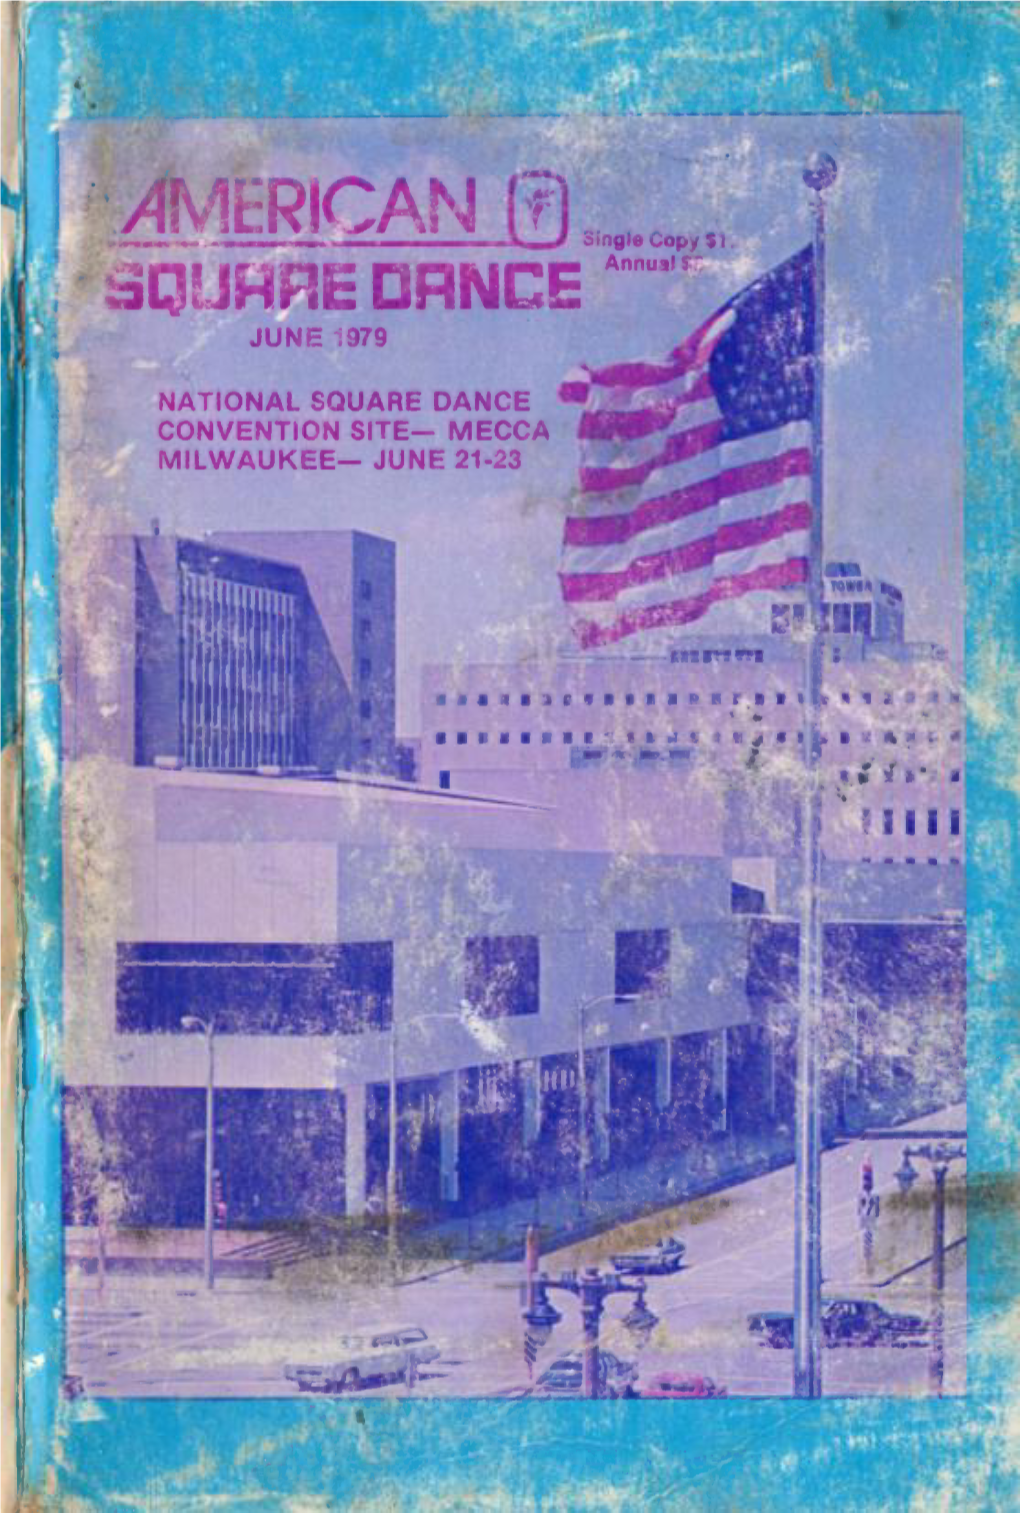 American Square Dance Vol. 34, No. 6